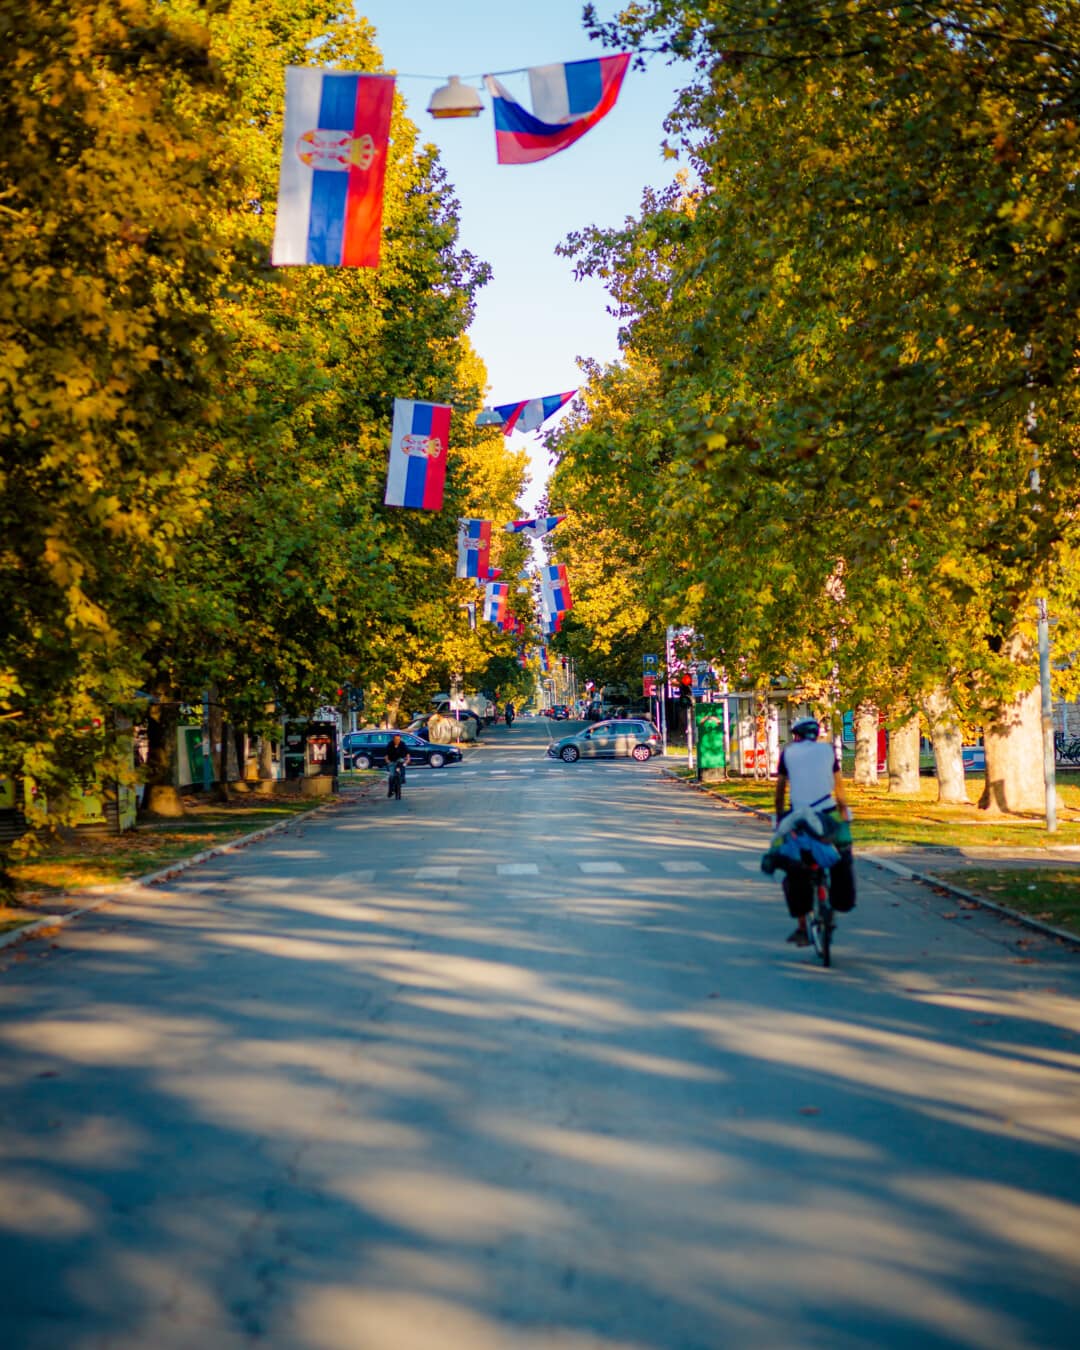 utca, közúti, forgalom, zászló, Szerbia, városi terület, kerékpározás, gyalogos, kerékpáros, kerékpározás